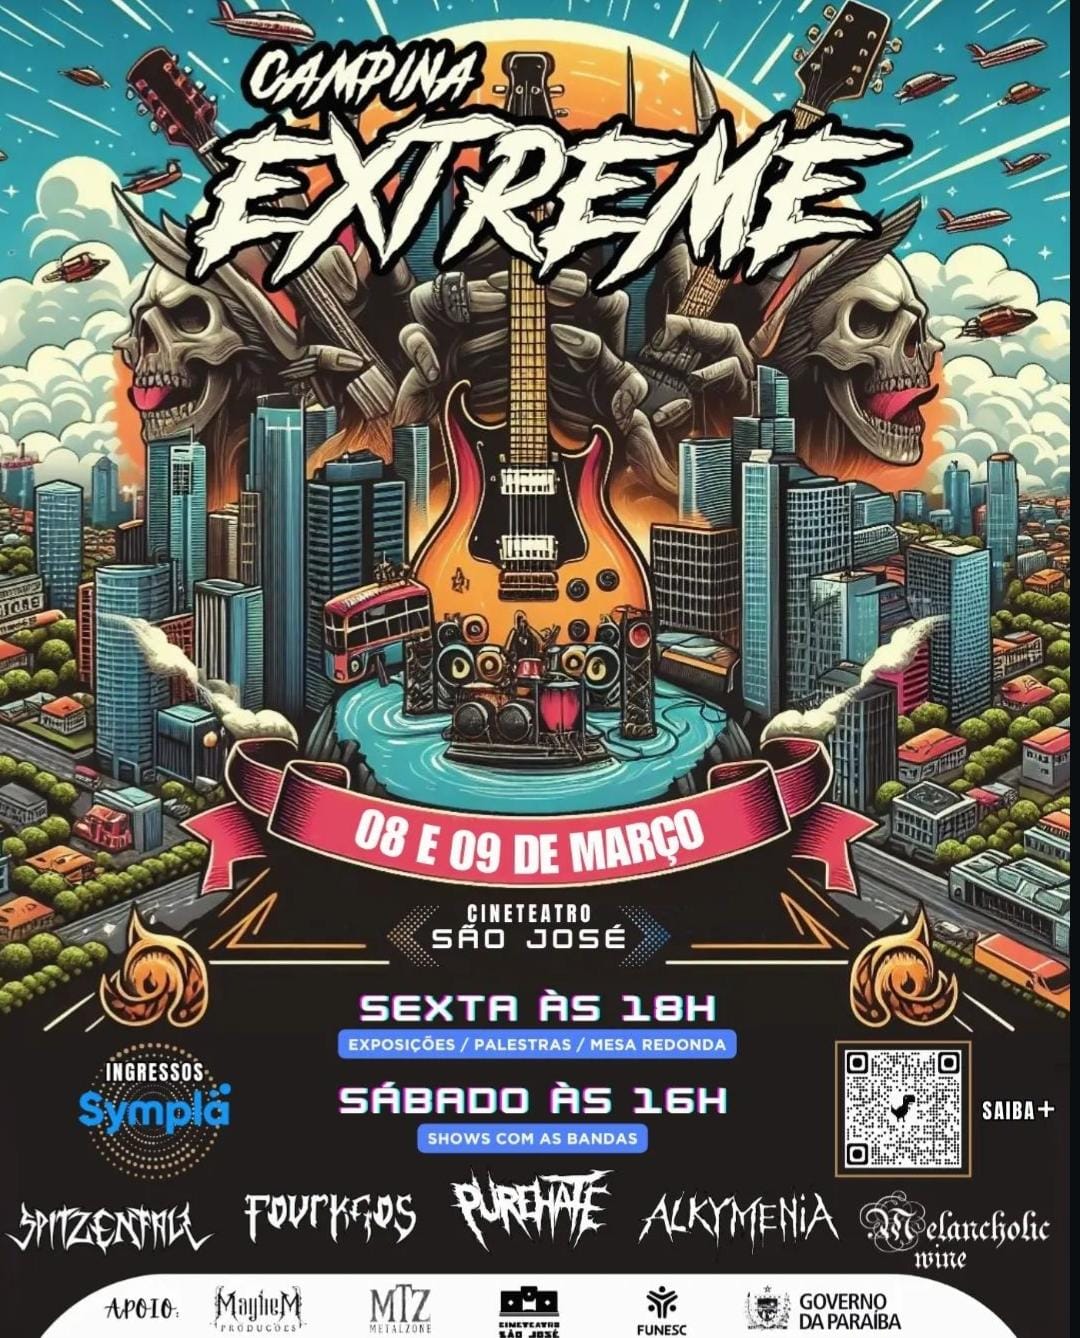 Campina Extreme II promove festival com 5 bandas e ações culturais nos dias 8 e 9 de Março em Campina Grande-PB